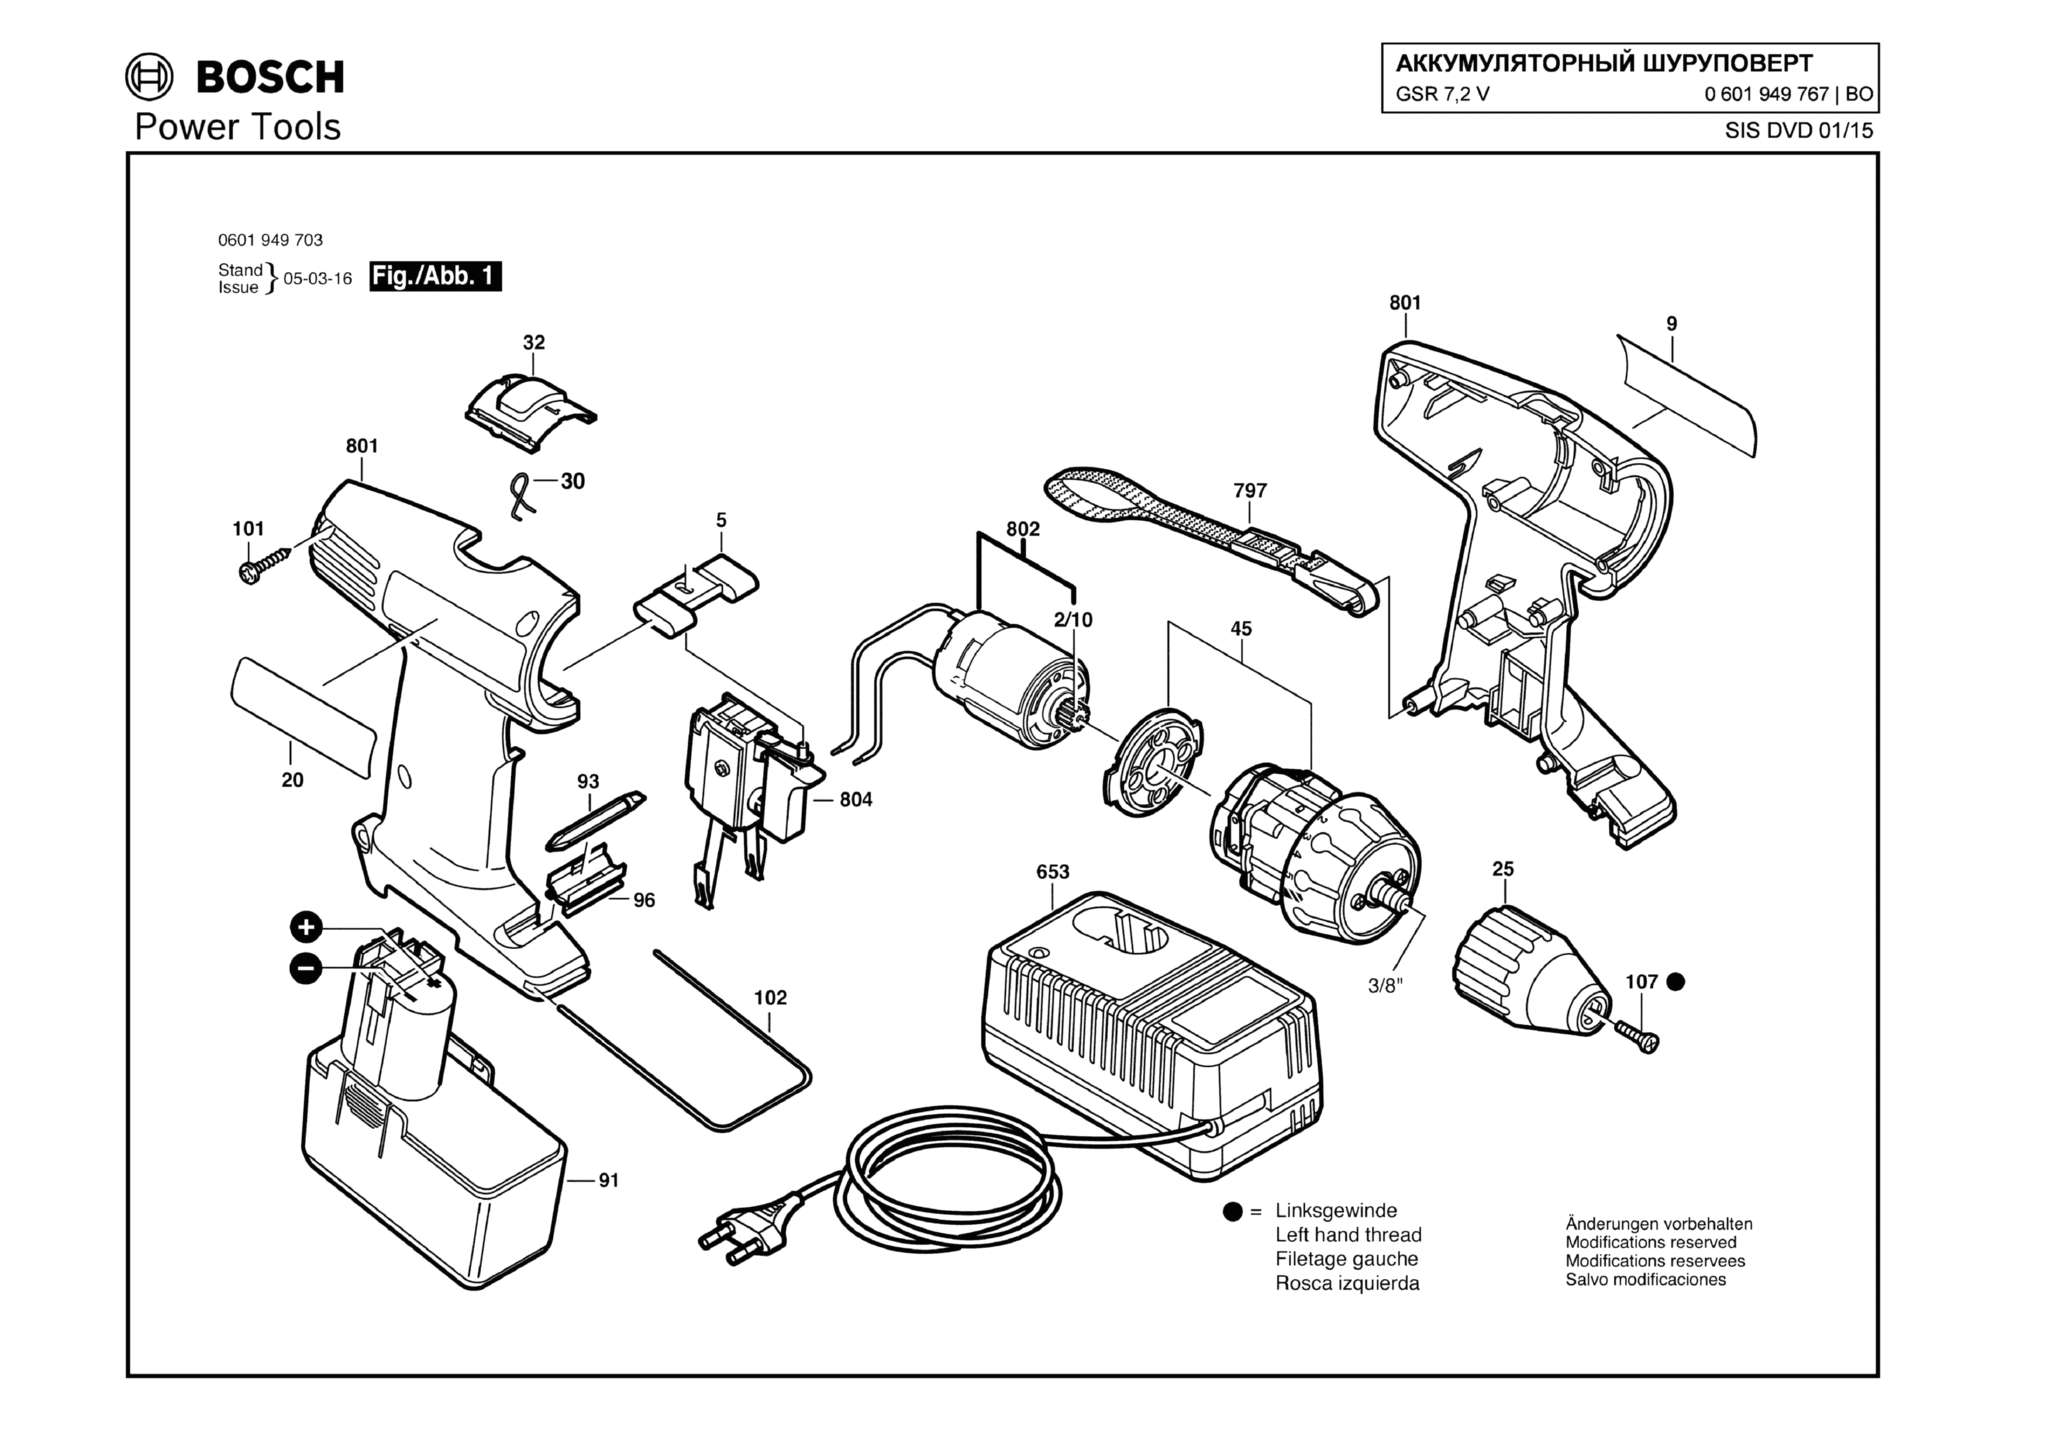 Запчасти, схема и деталировка Bosch GSR 7,2 V (ТИП 0601949767)